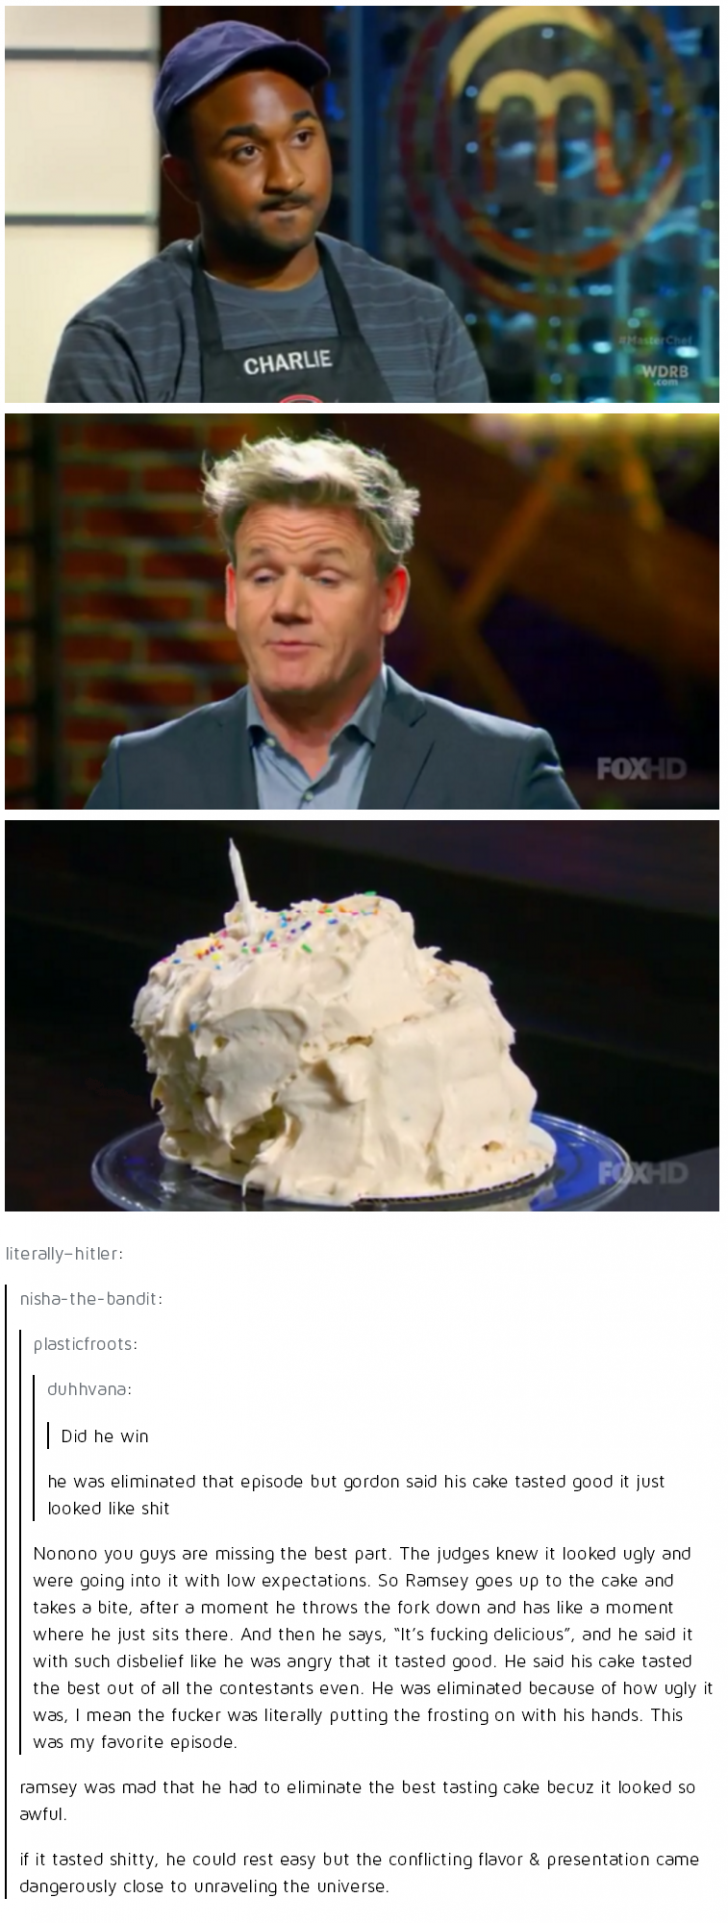 The cake saga